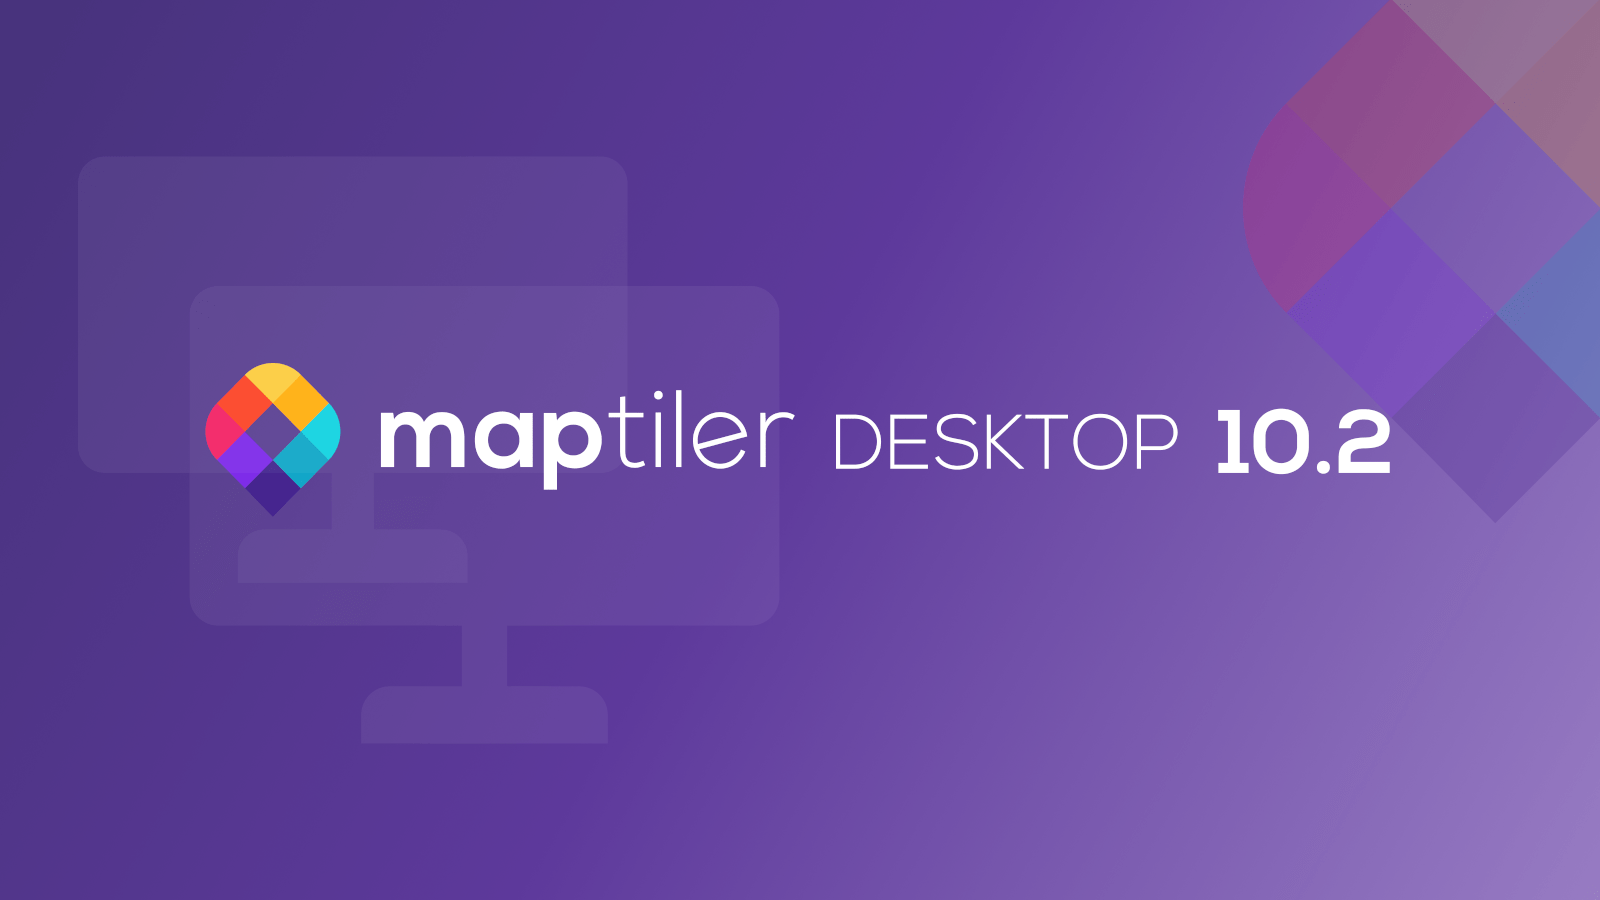 MapTiler Desktop 10.2 image